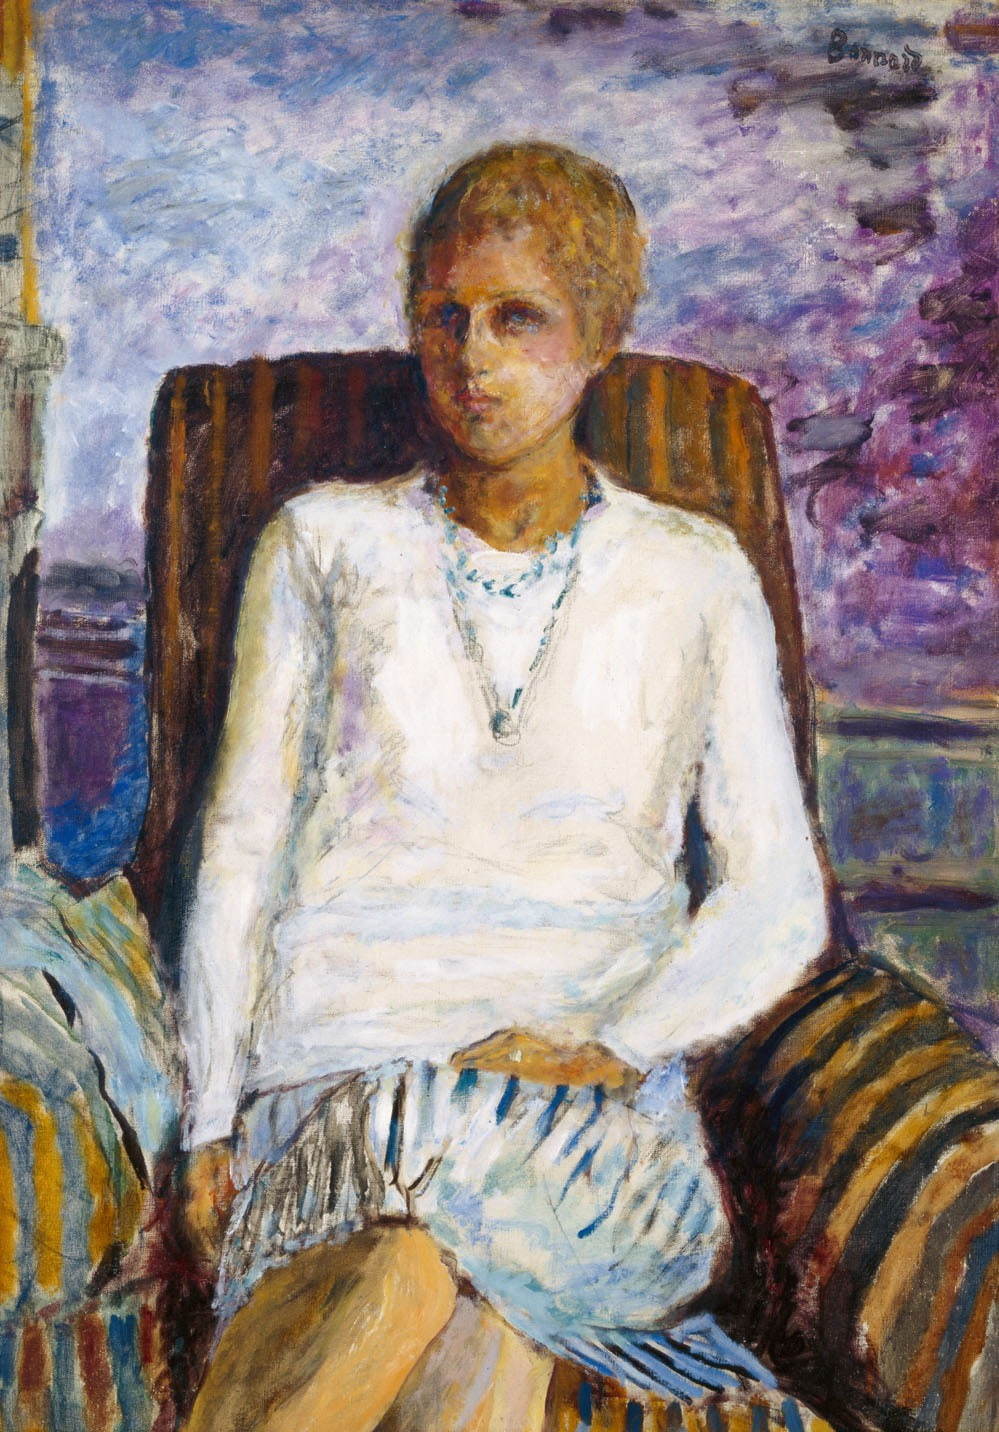 ピエール・ボナール《白いコルサージュの少女(レイラ・クロード・アネ嬢)》1930年 油彩・キャンヴァス  ひろしま美術館